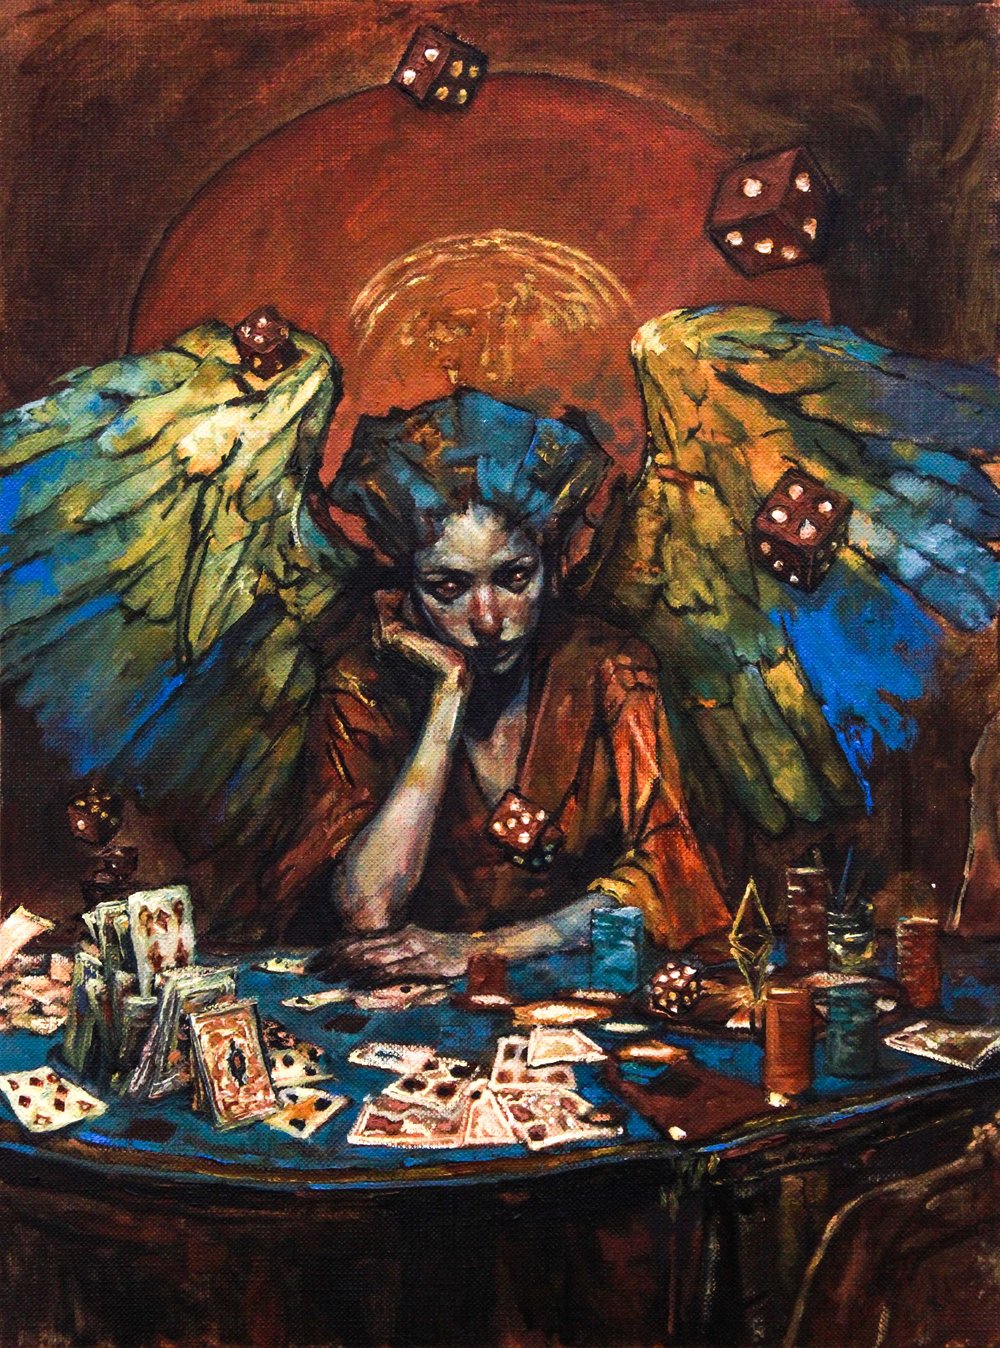 THE GAMBLER'S ANGEL